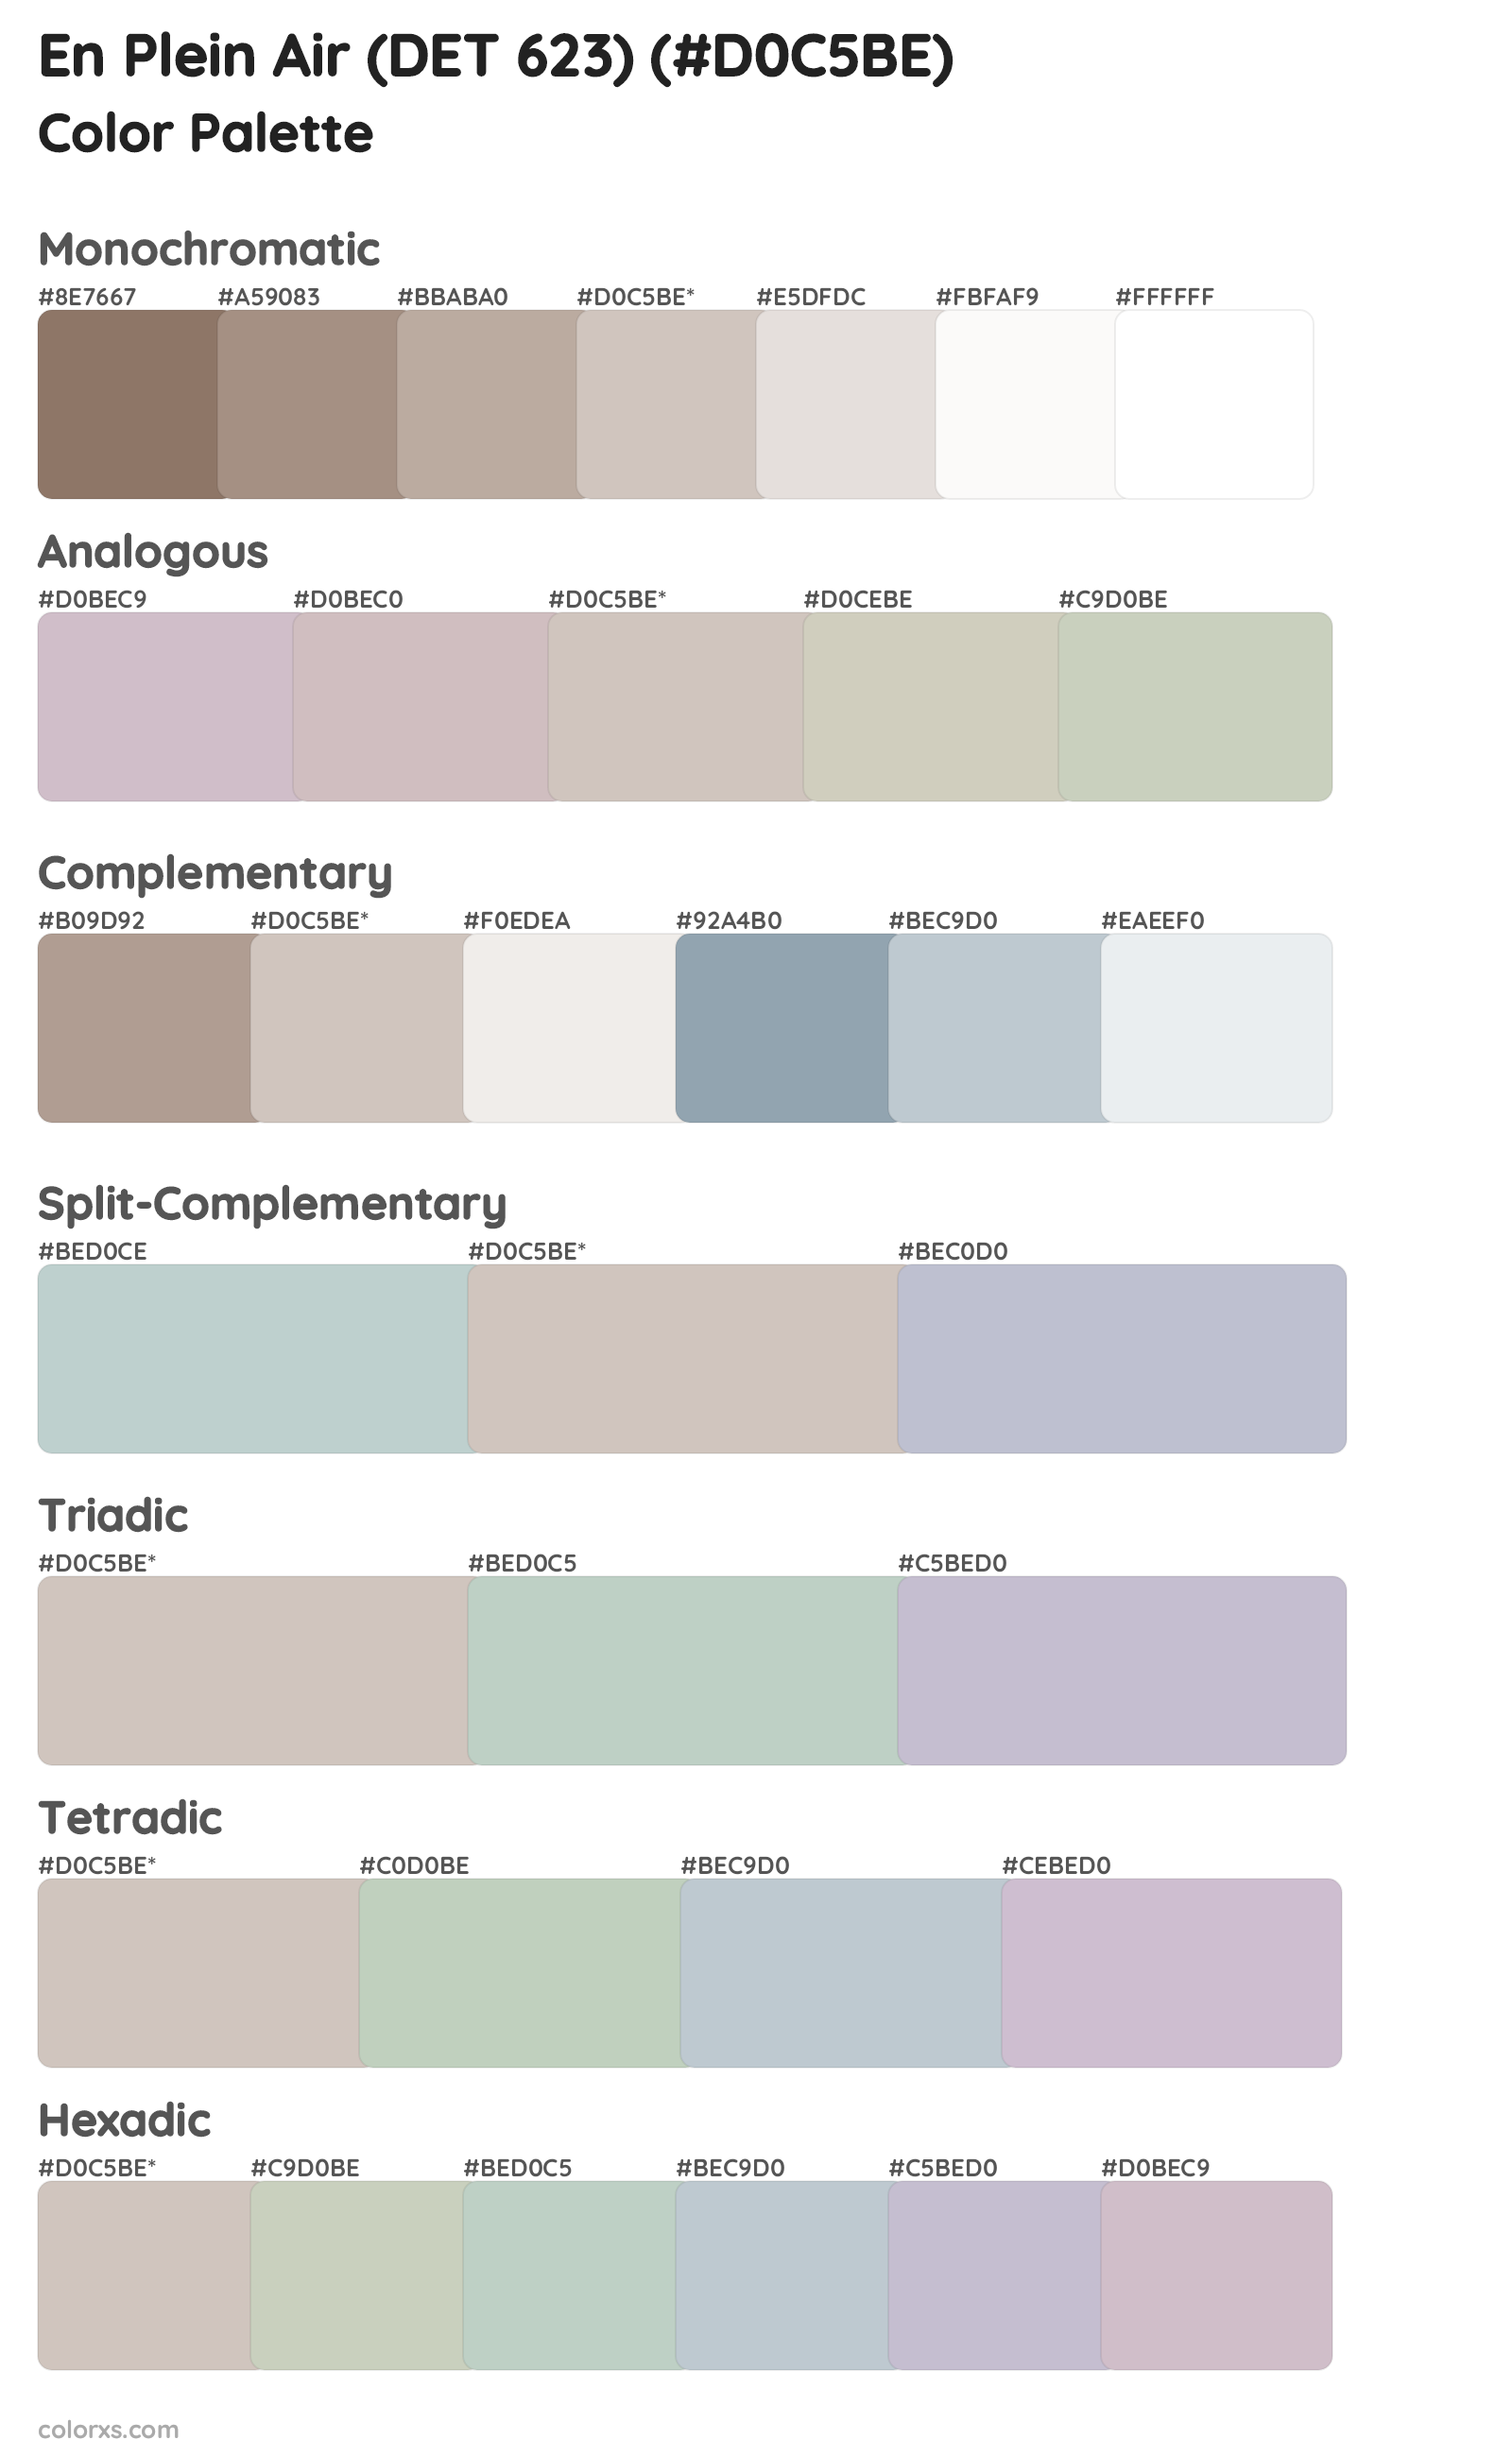 En Plein Air (DET 623) Color Scheme Palettes